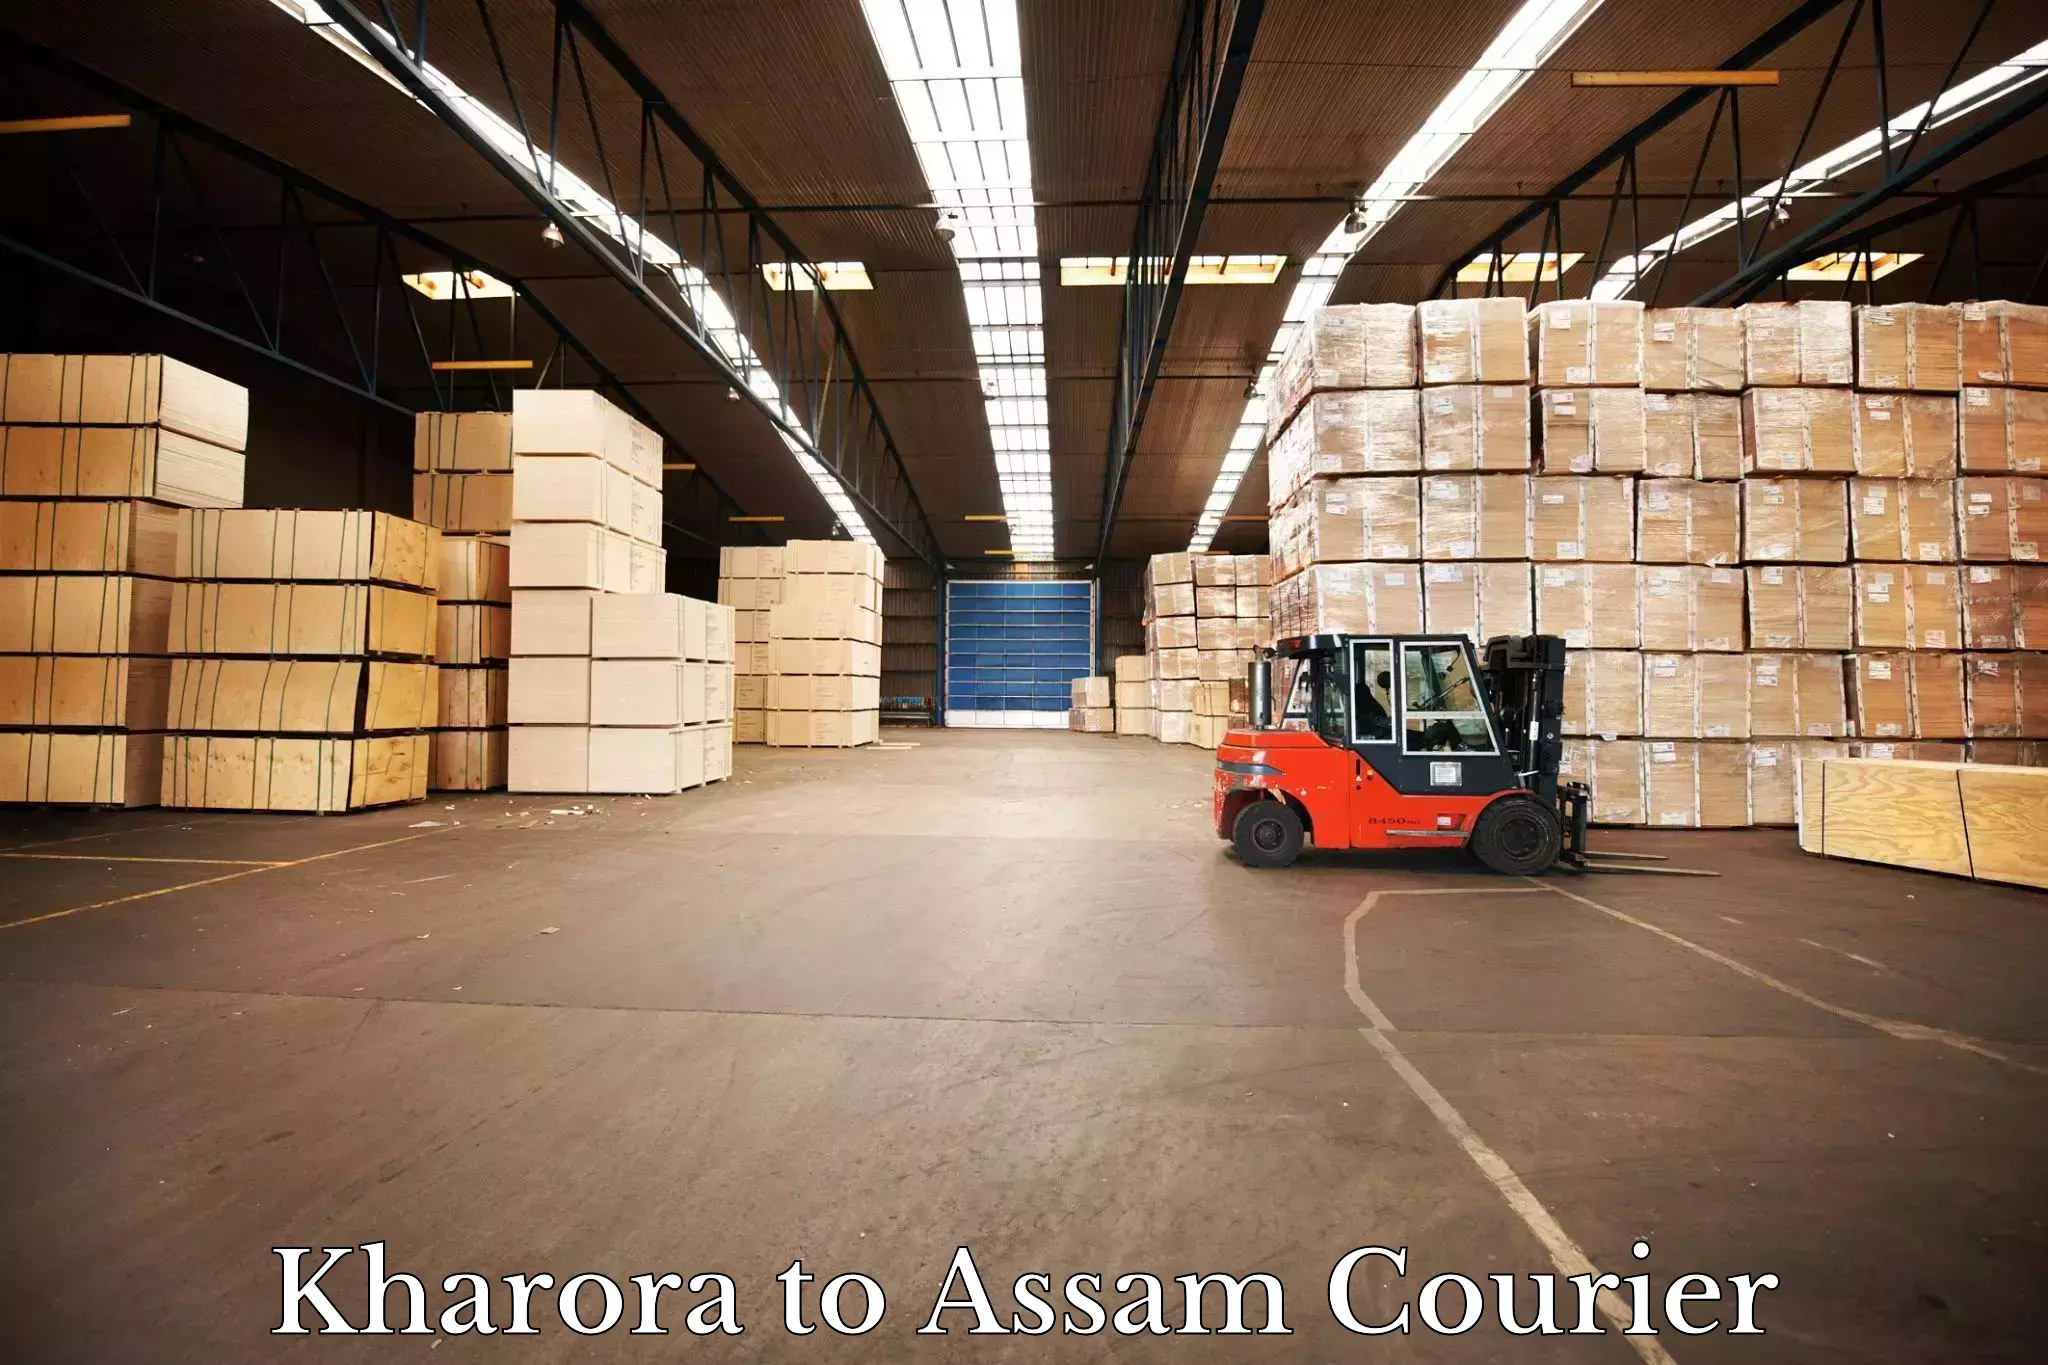 Wholesale parcel delivery in Kharora to Badarpur Karimganj